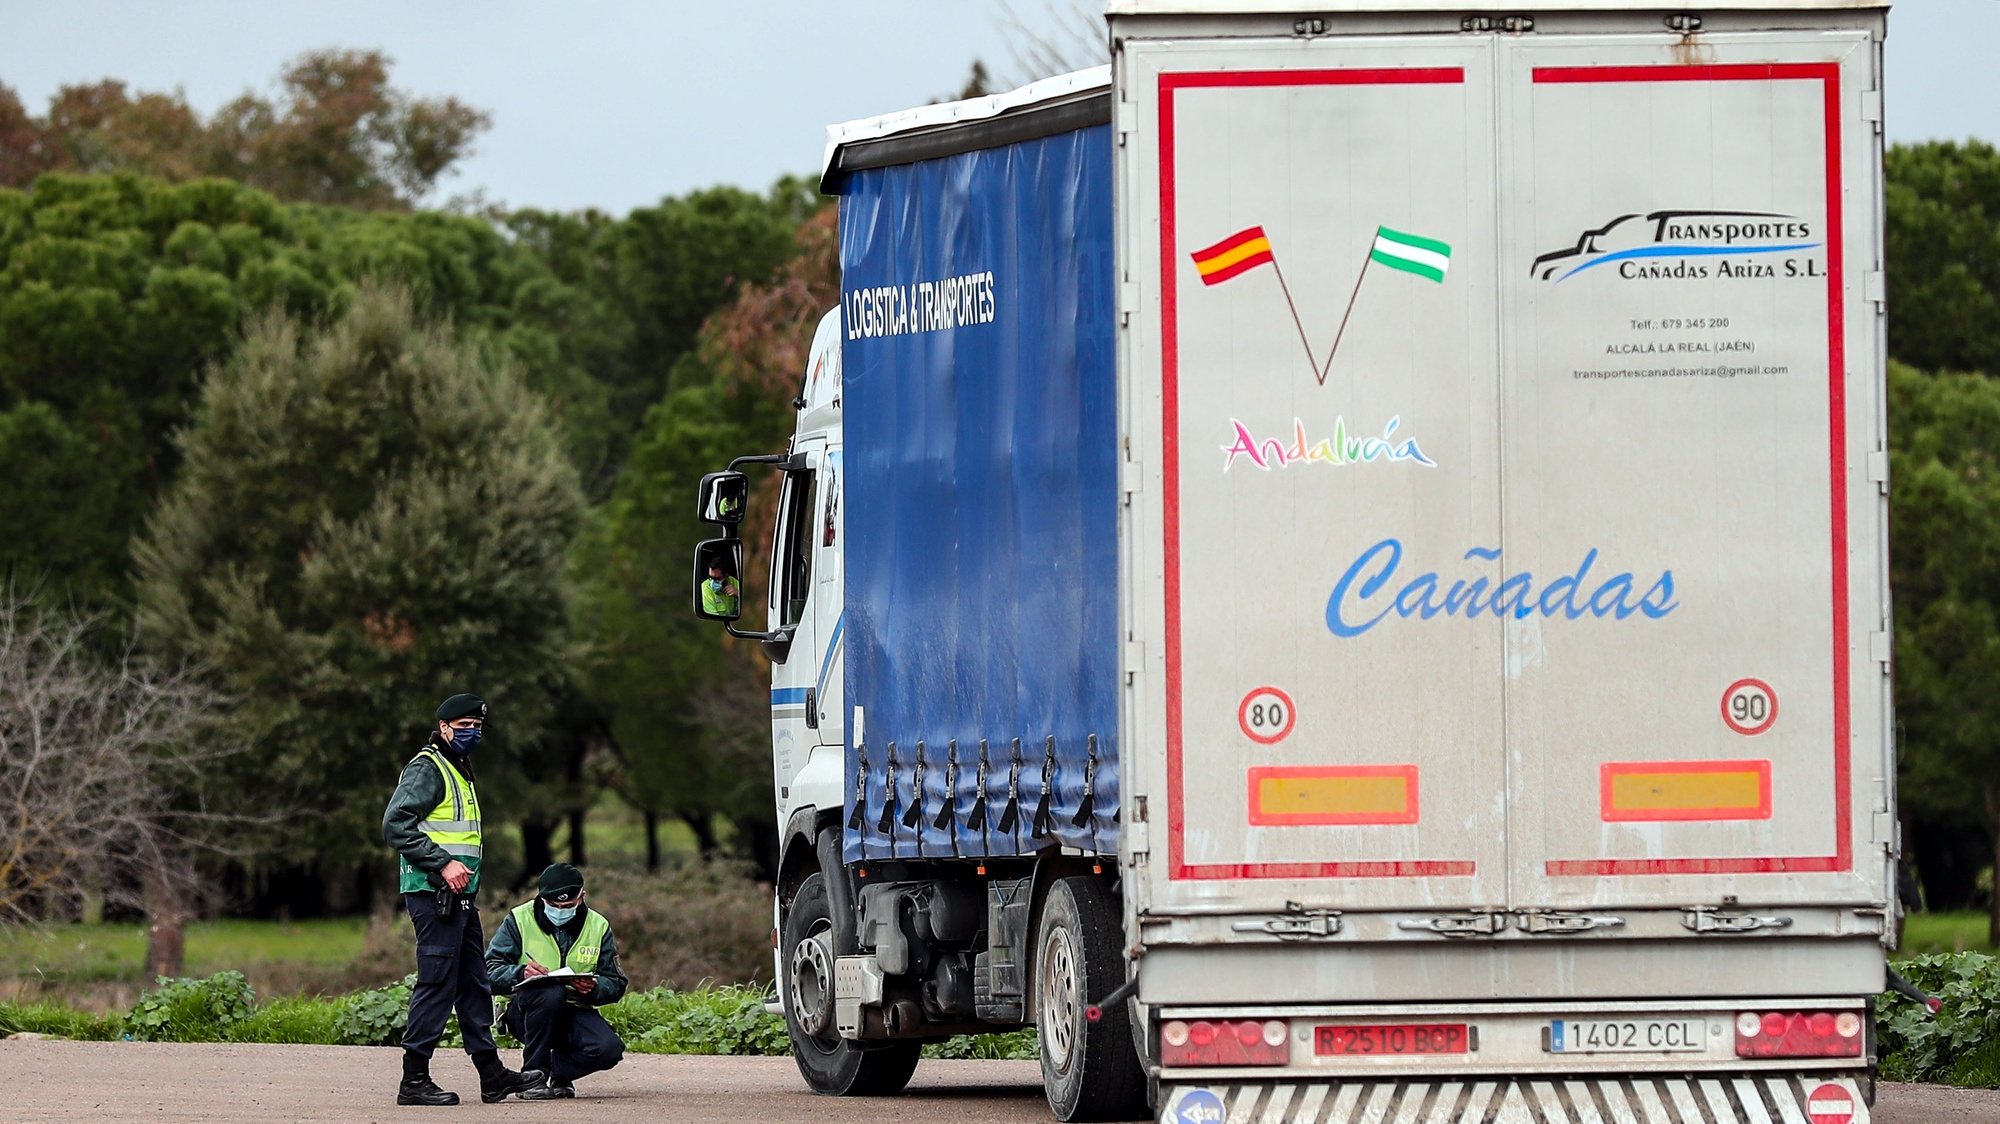 Agentes da GNR verificam a documentação de um camionista durante uma operação de controlo na entrada em Portugal pela fronteira do Caia (Elvas), 1 de fevereiro de 2021. As fronteiras foram repostas desde as 00:00 de domingo, dia 31 de janeiro, no âmbito das medidas para conter a propagação da covid-19 no território português. NUNO VEIGA/LUSA